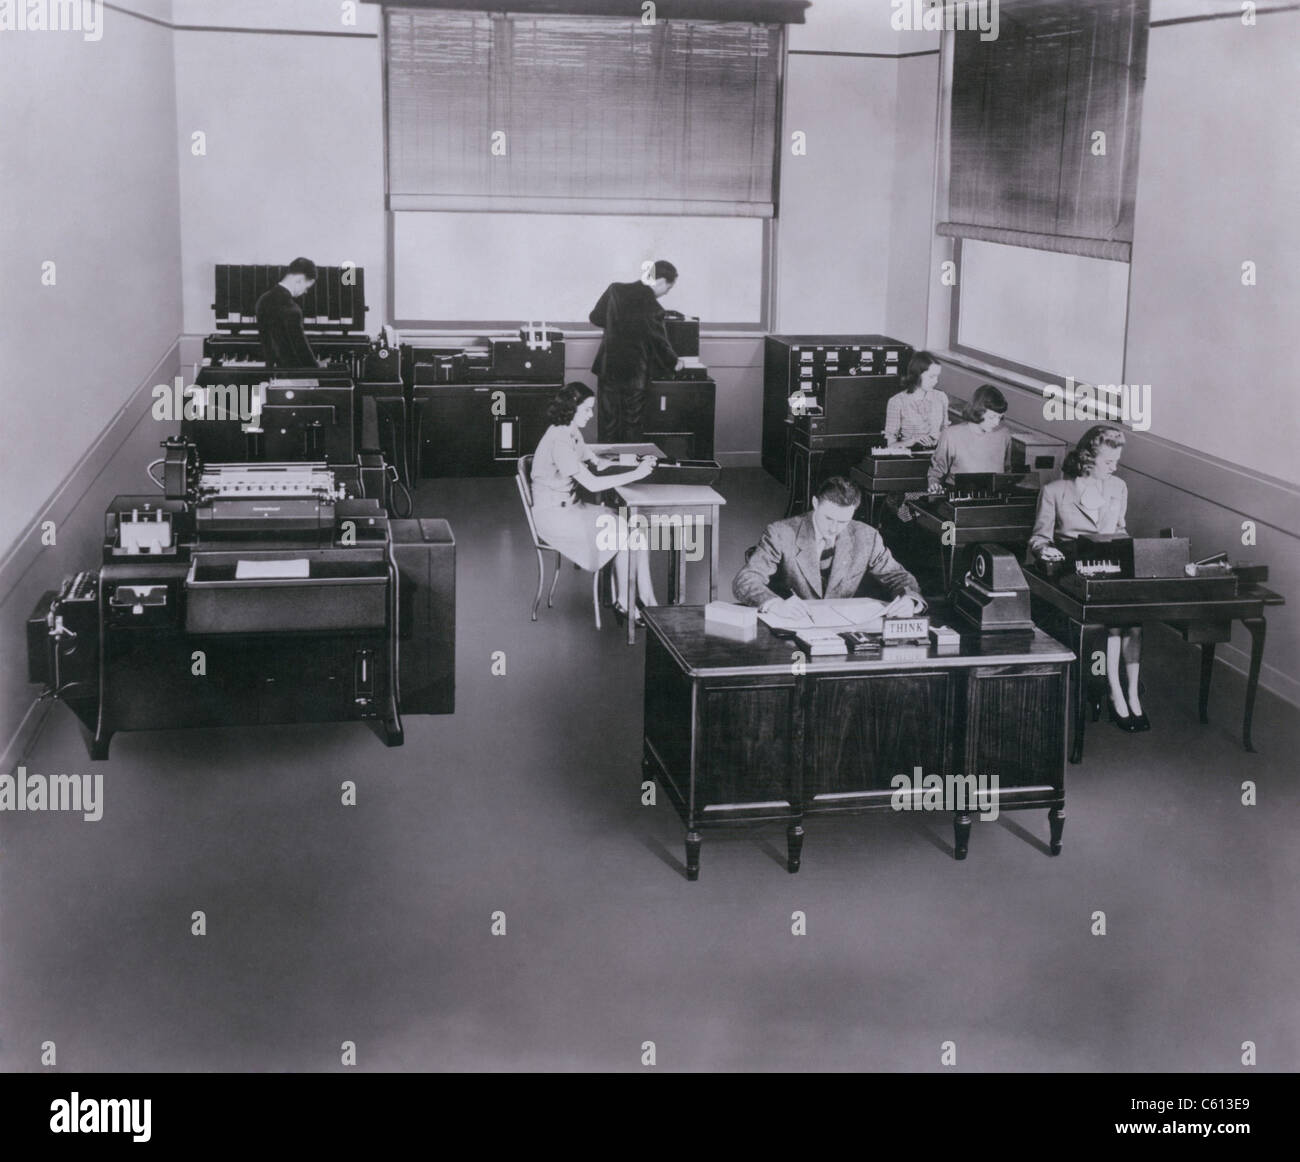 Mitte des Jahrhunderts stand der Technik IBM Computer mit Lochkarten und Sortiermaschinen. IBM (International Business Machines) führen die Entwicklung von Tabulatoren oder mechanischen Computer für die geschäftliche Nutzung. Ca. 1950. Stockfoto